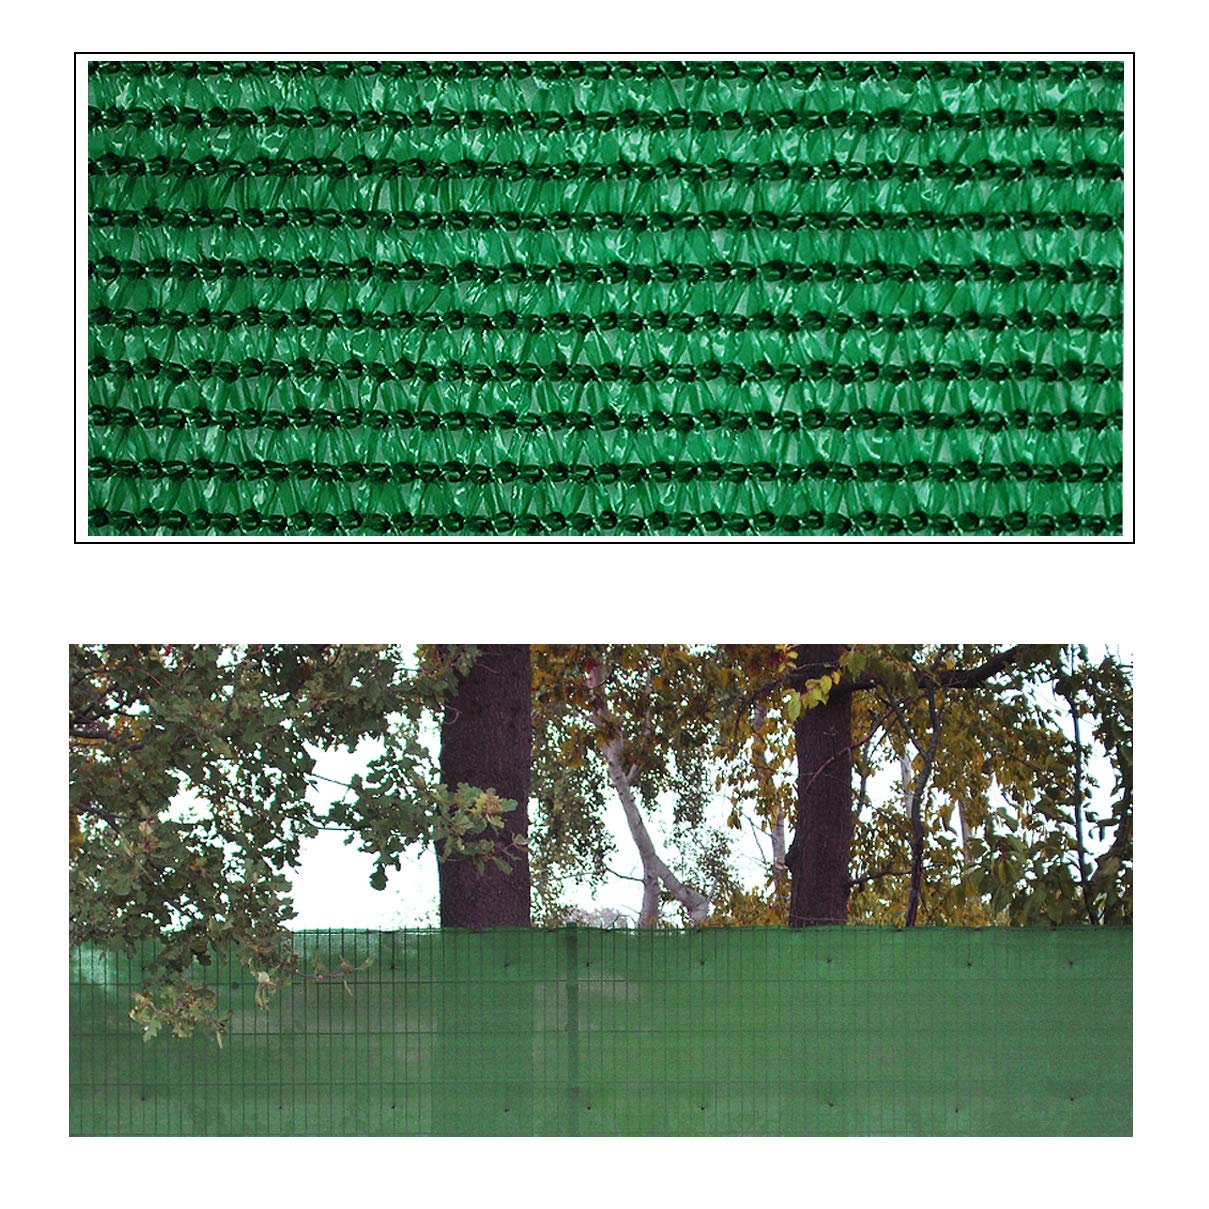 Helo 'J20' Sichtschutznetz Zaunblende 20 m Länge x 1,5 m Höhe (grün) aus HDPE Gewebe, hoch reißest, witterungs- und UV-beständig, ideal als Sichtschutz, Windschutz, Staubschutz oder Sonnenschutz Netz